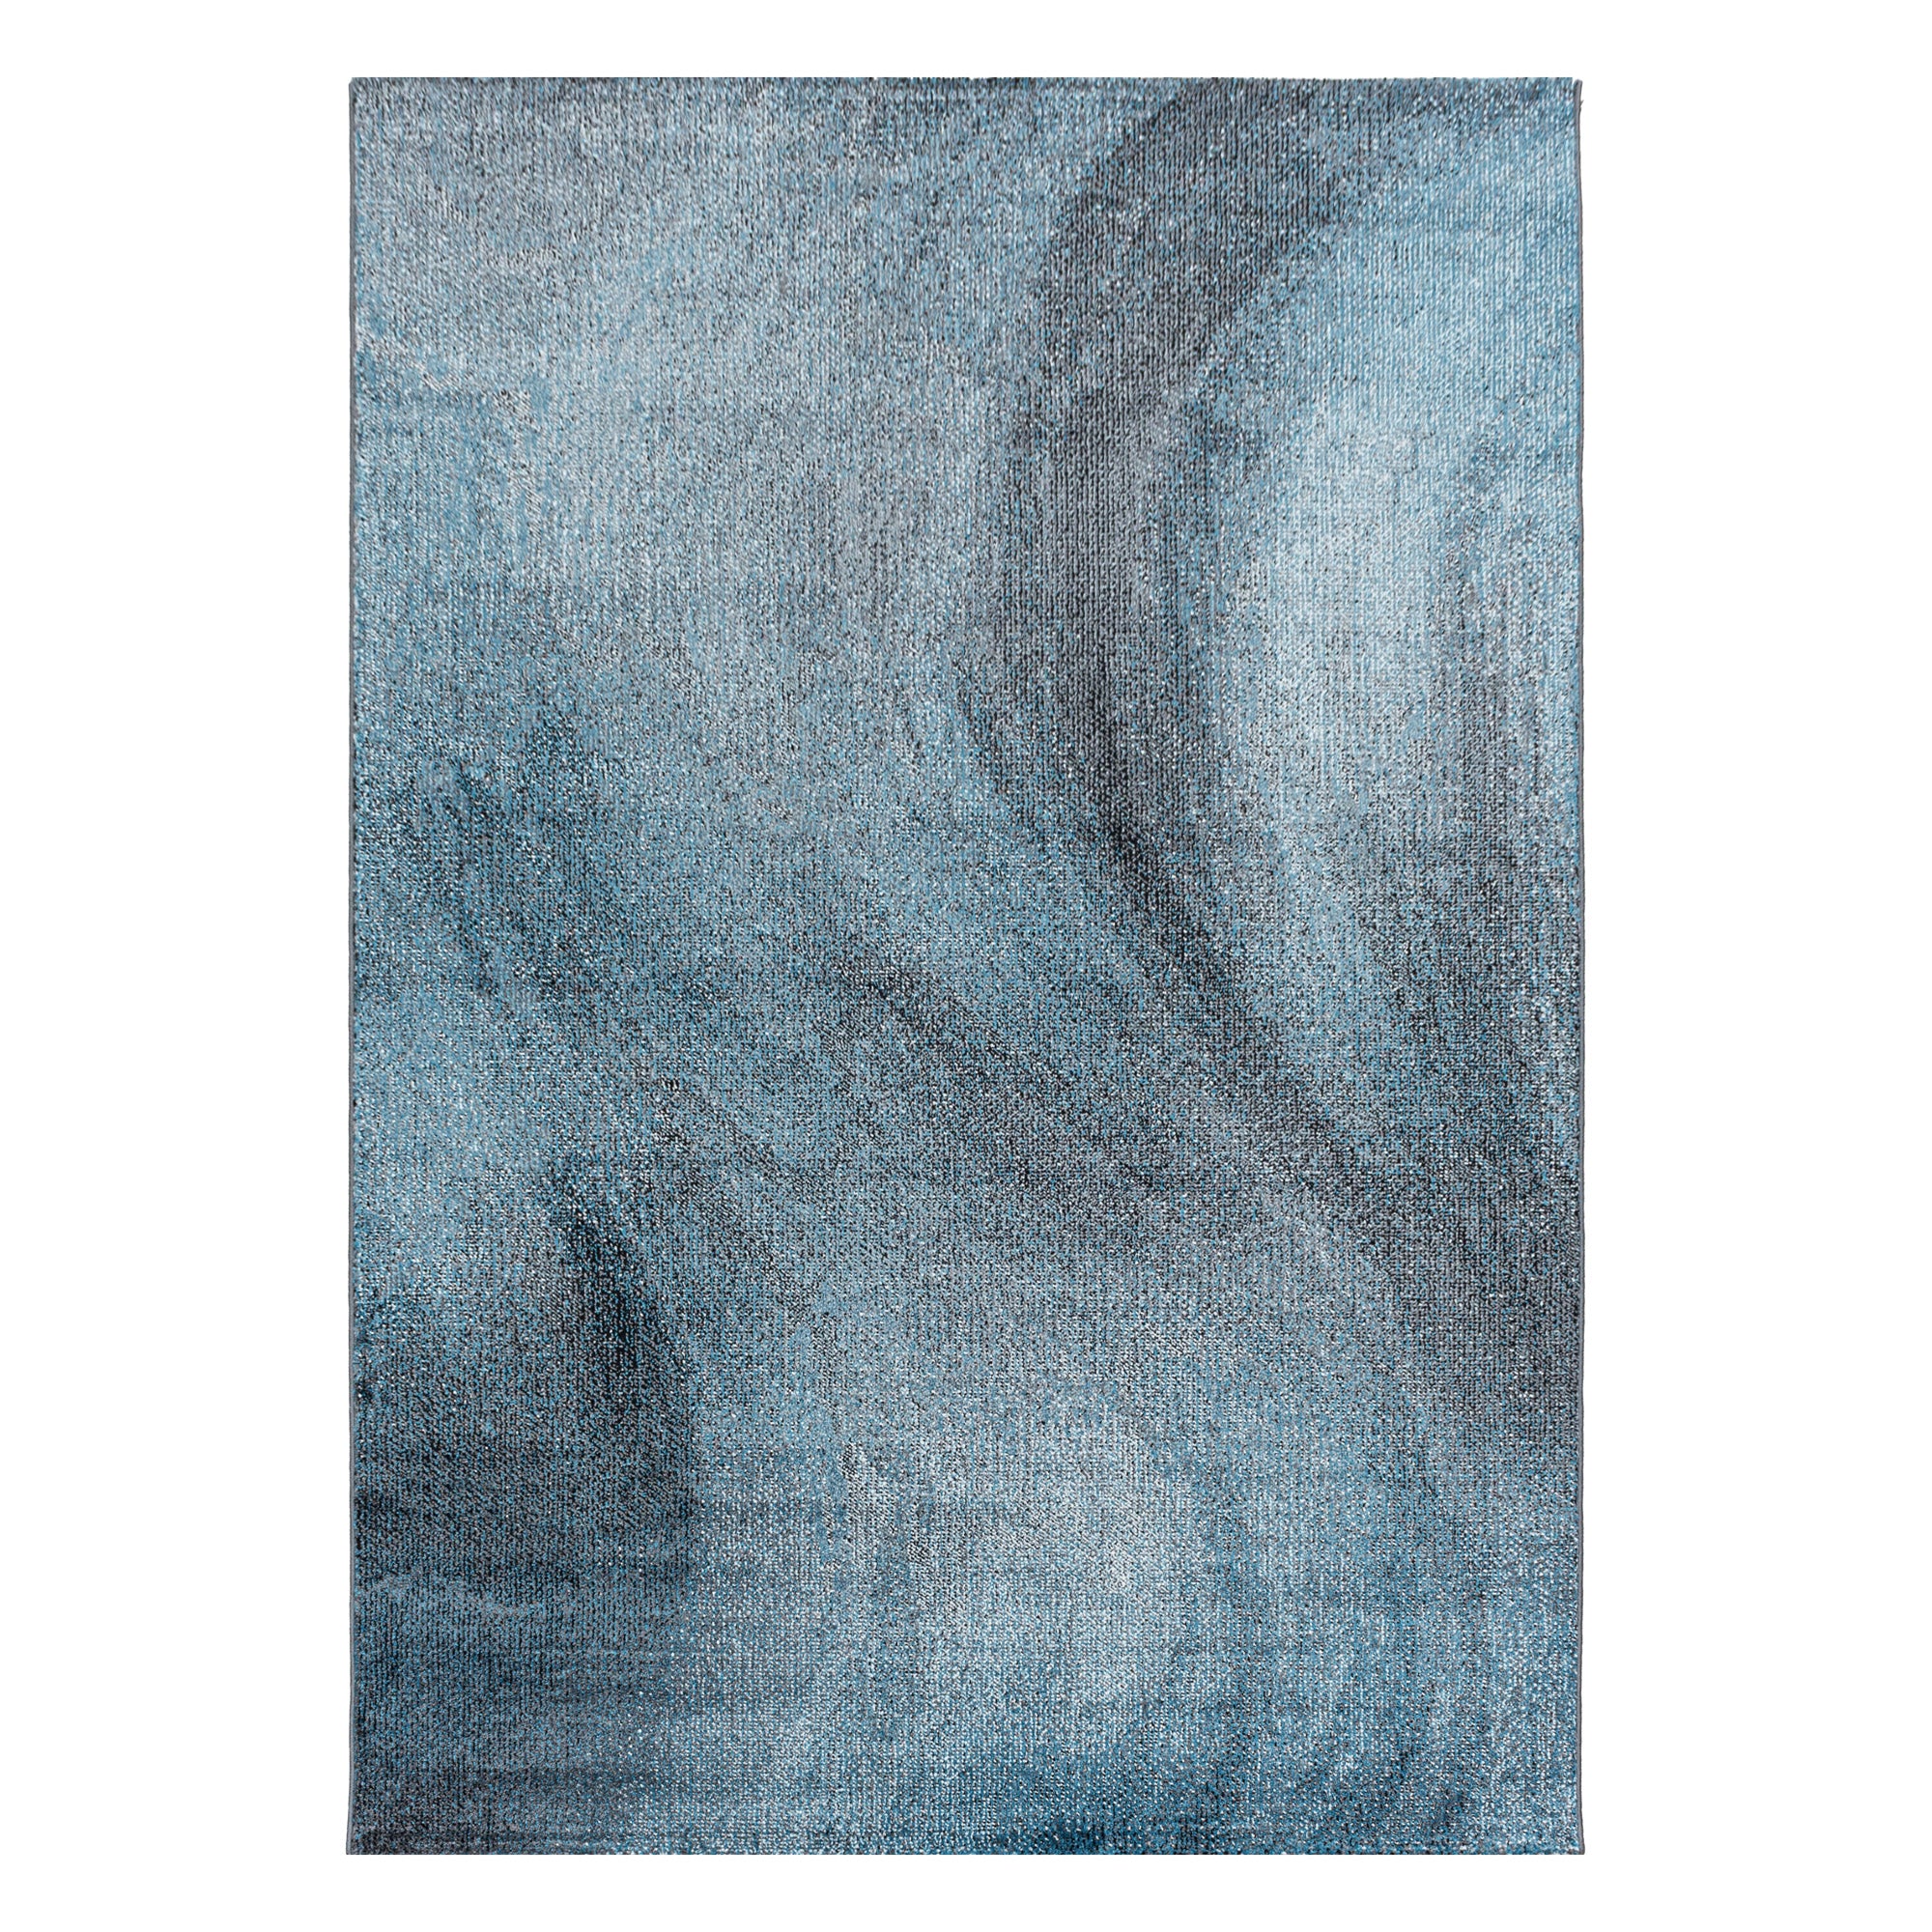 Kurzflor Teppich Blau Grau Muster Verwischt Marmoriert Wohnzimmerteppich Weich